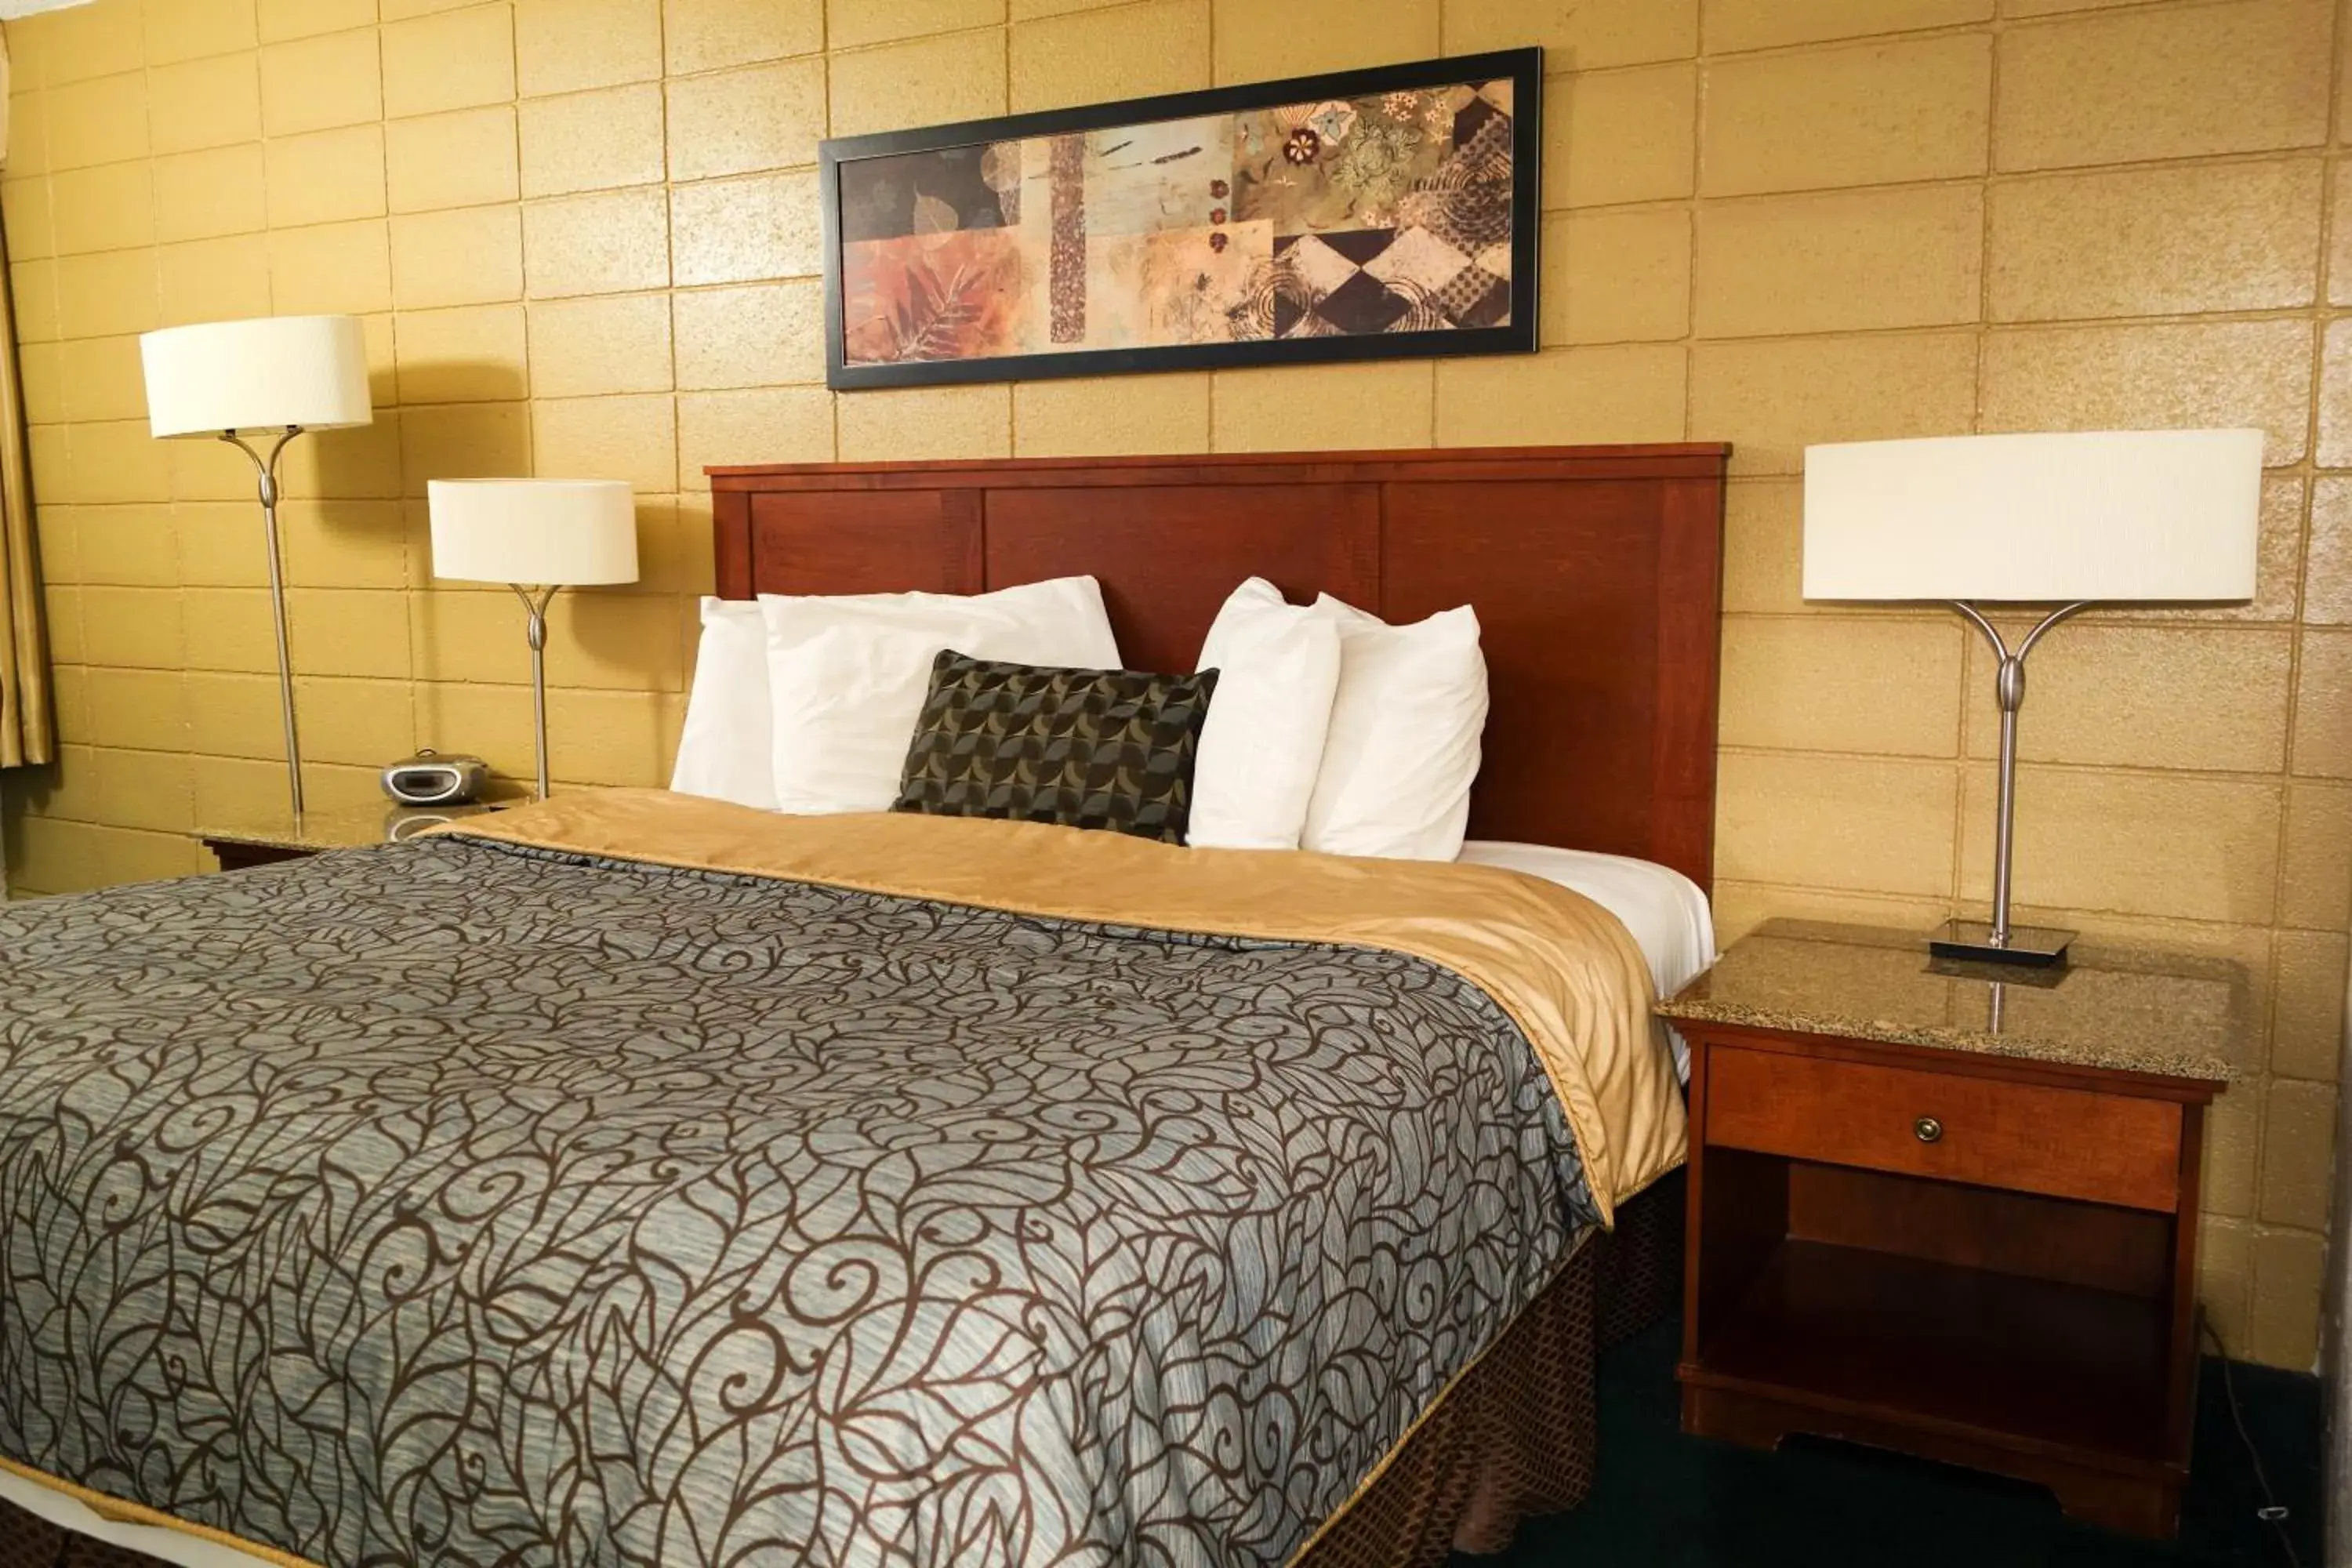 Bed in Cabana Inn - Boise